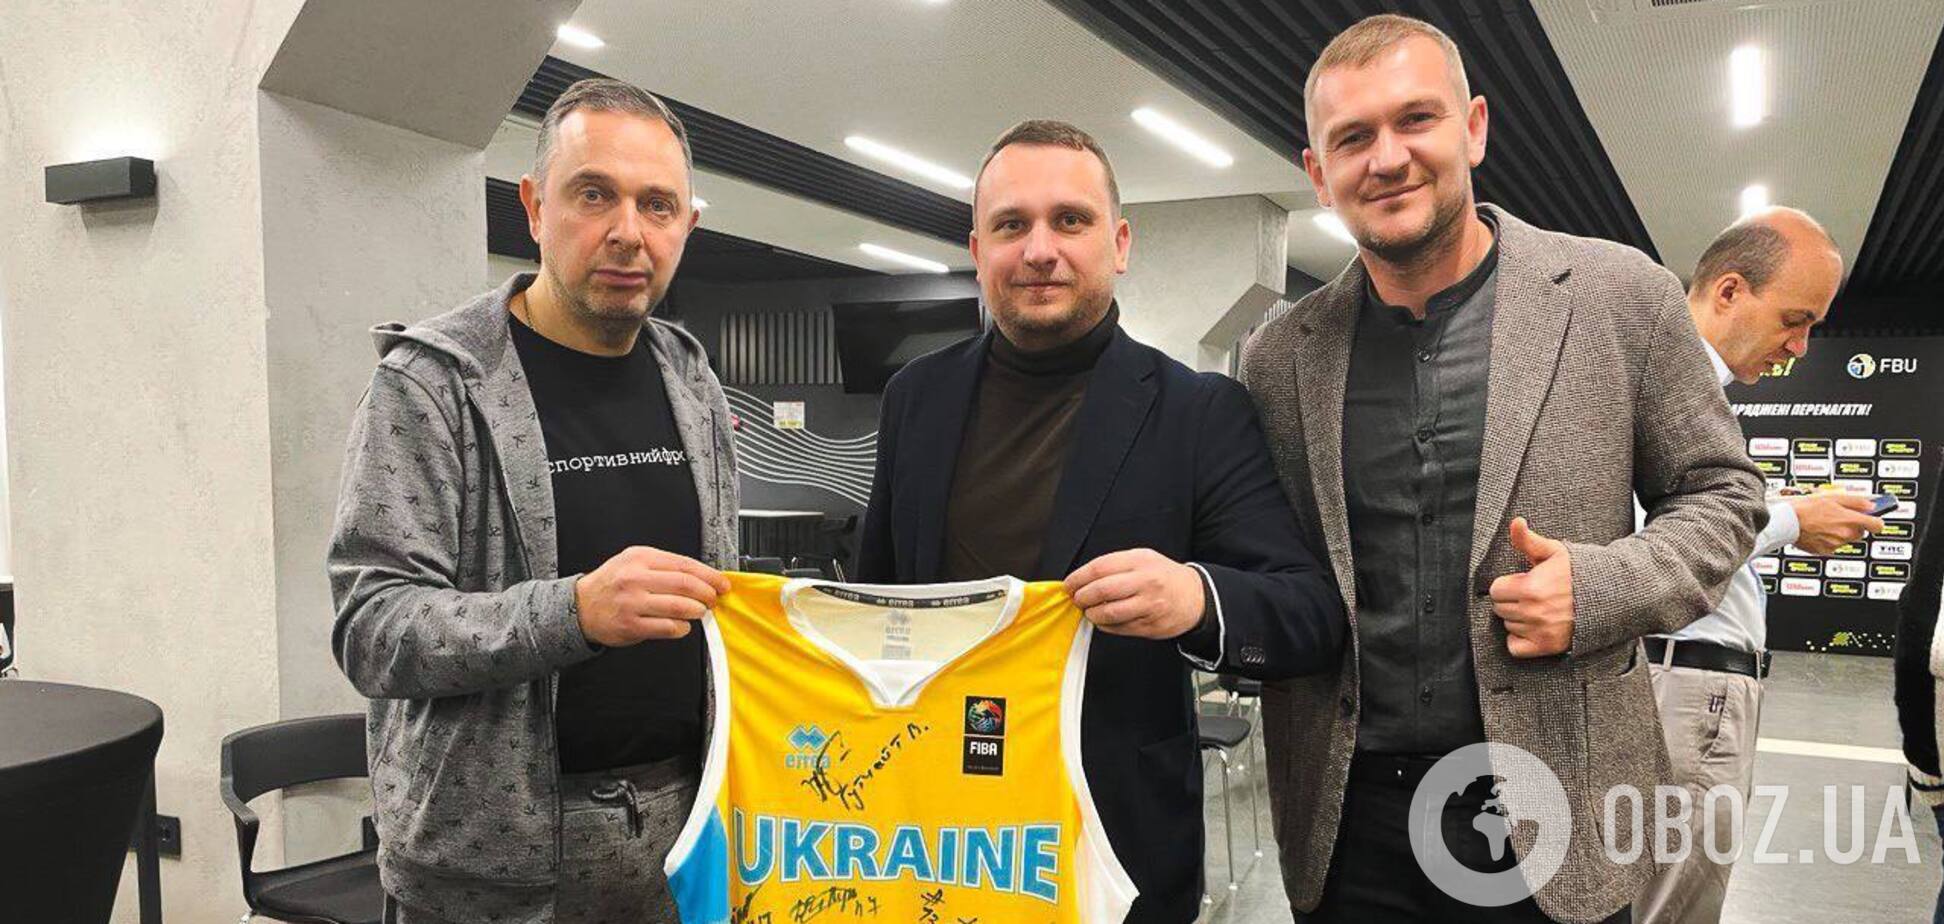 Аукцион! Стань обладателем майки сборной Украины с автографами Михайлюка, Лэня и других игроков